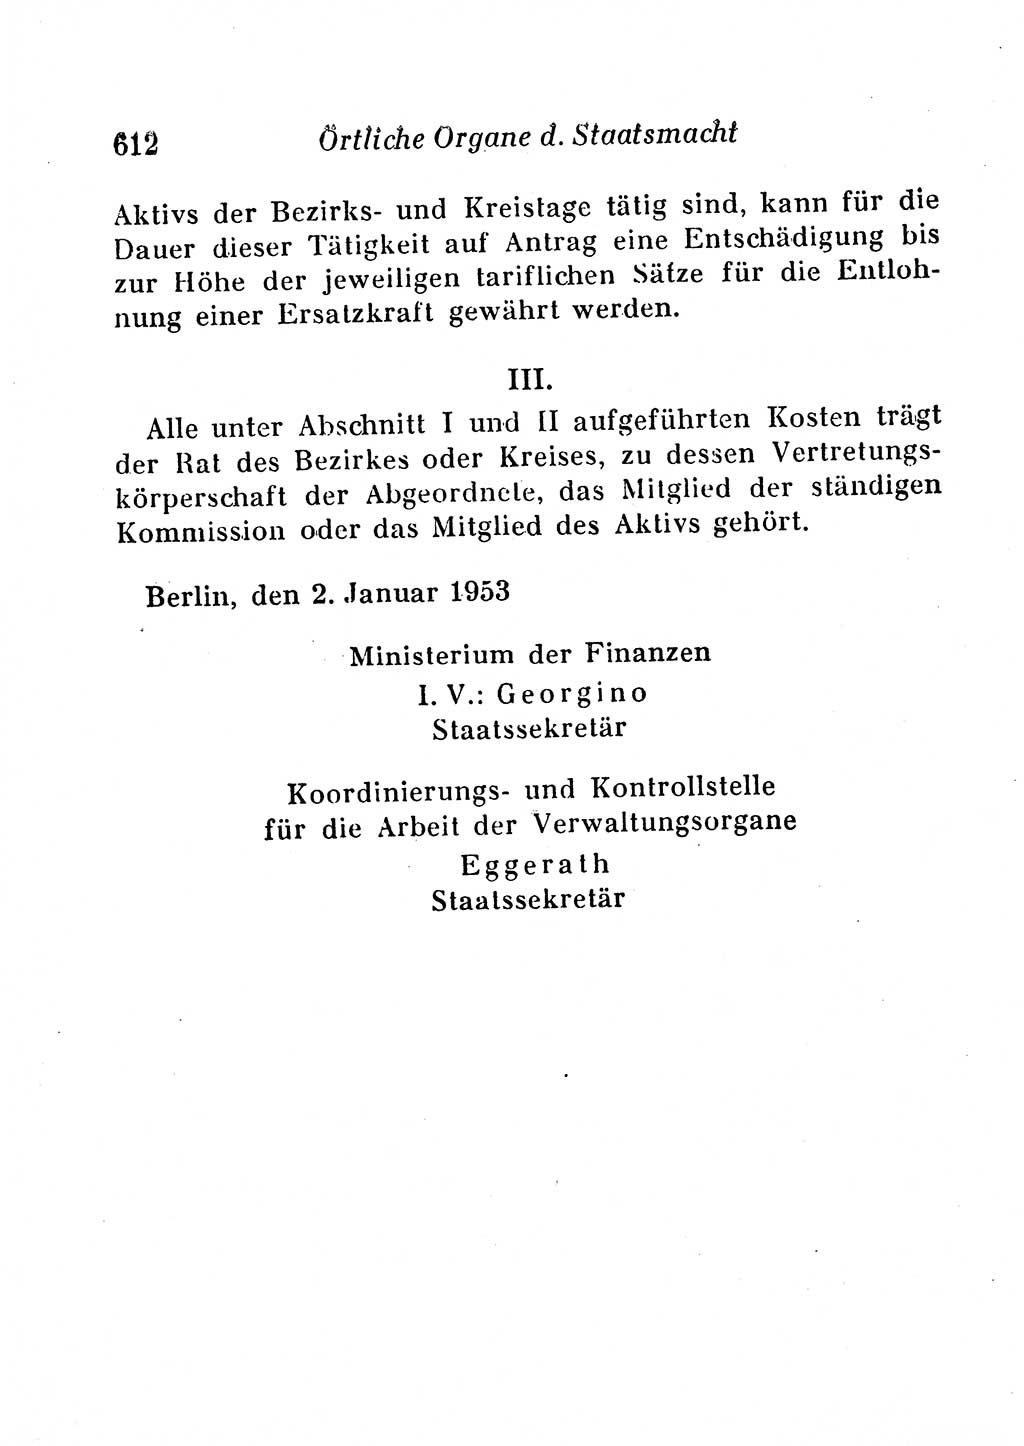 Staats- und verwaltungsrechtliche Gesetze der Deutschen Demokratischen Republik (DDR) 1958, Seite 612 (StVerwR Ges. DDR 1958, S. 612)